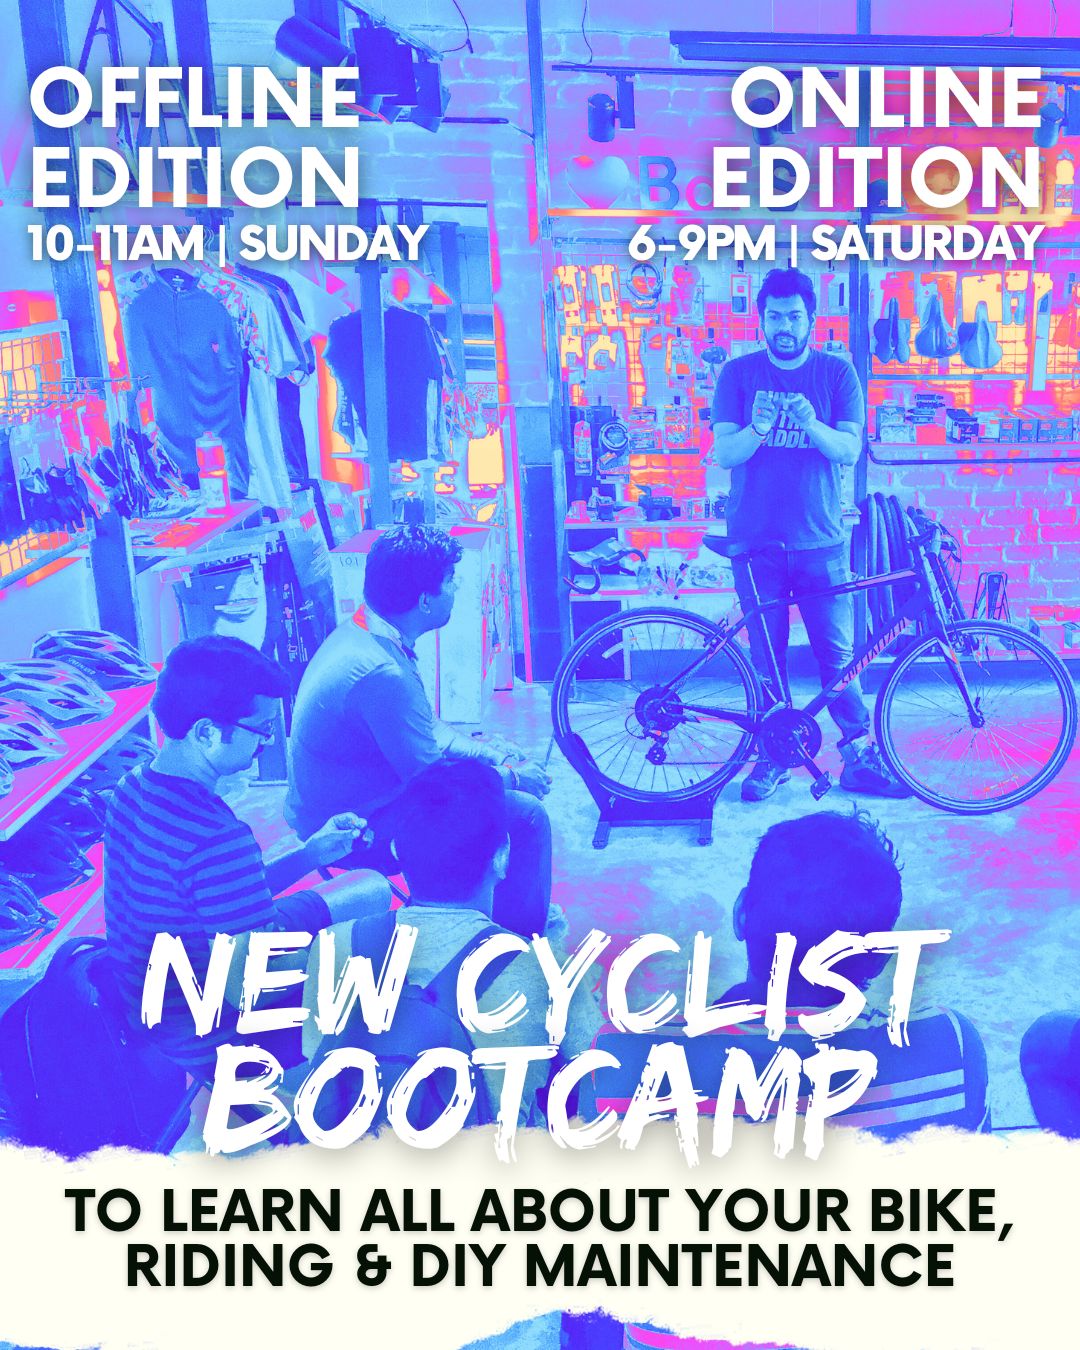 Beginner Cyclist BOOTCAMP - ONLINE & OFFLINE Workshops